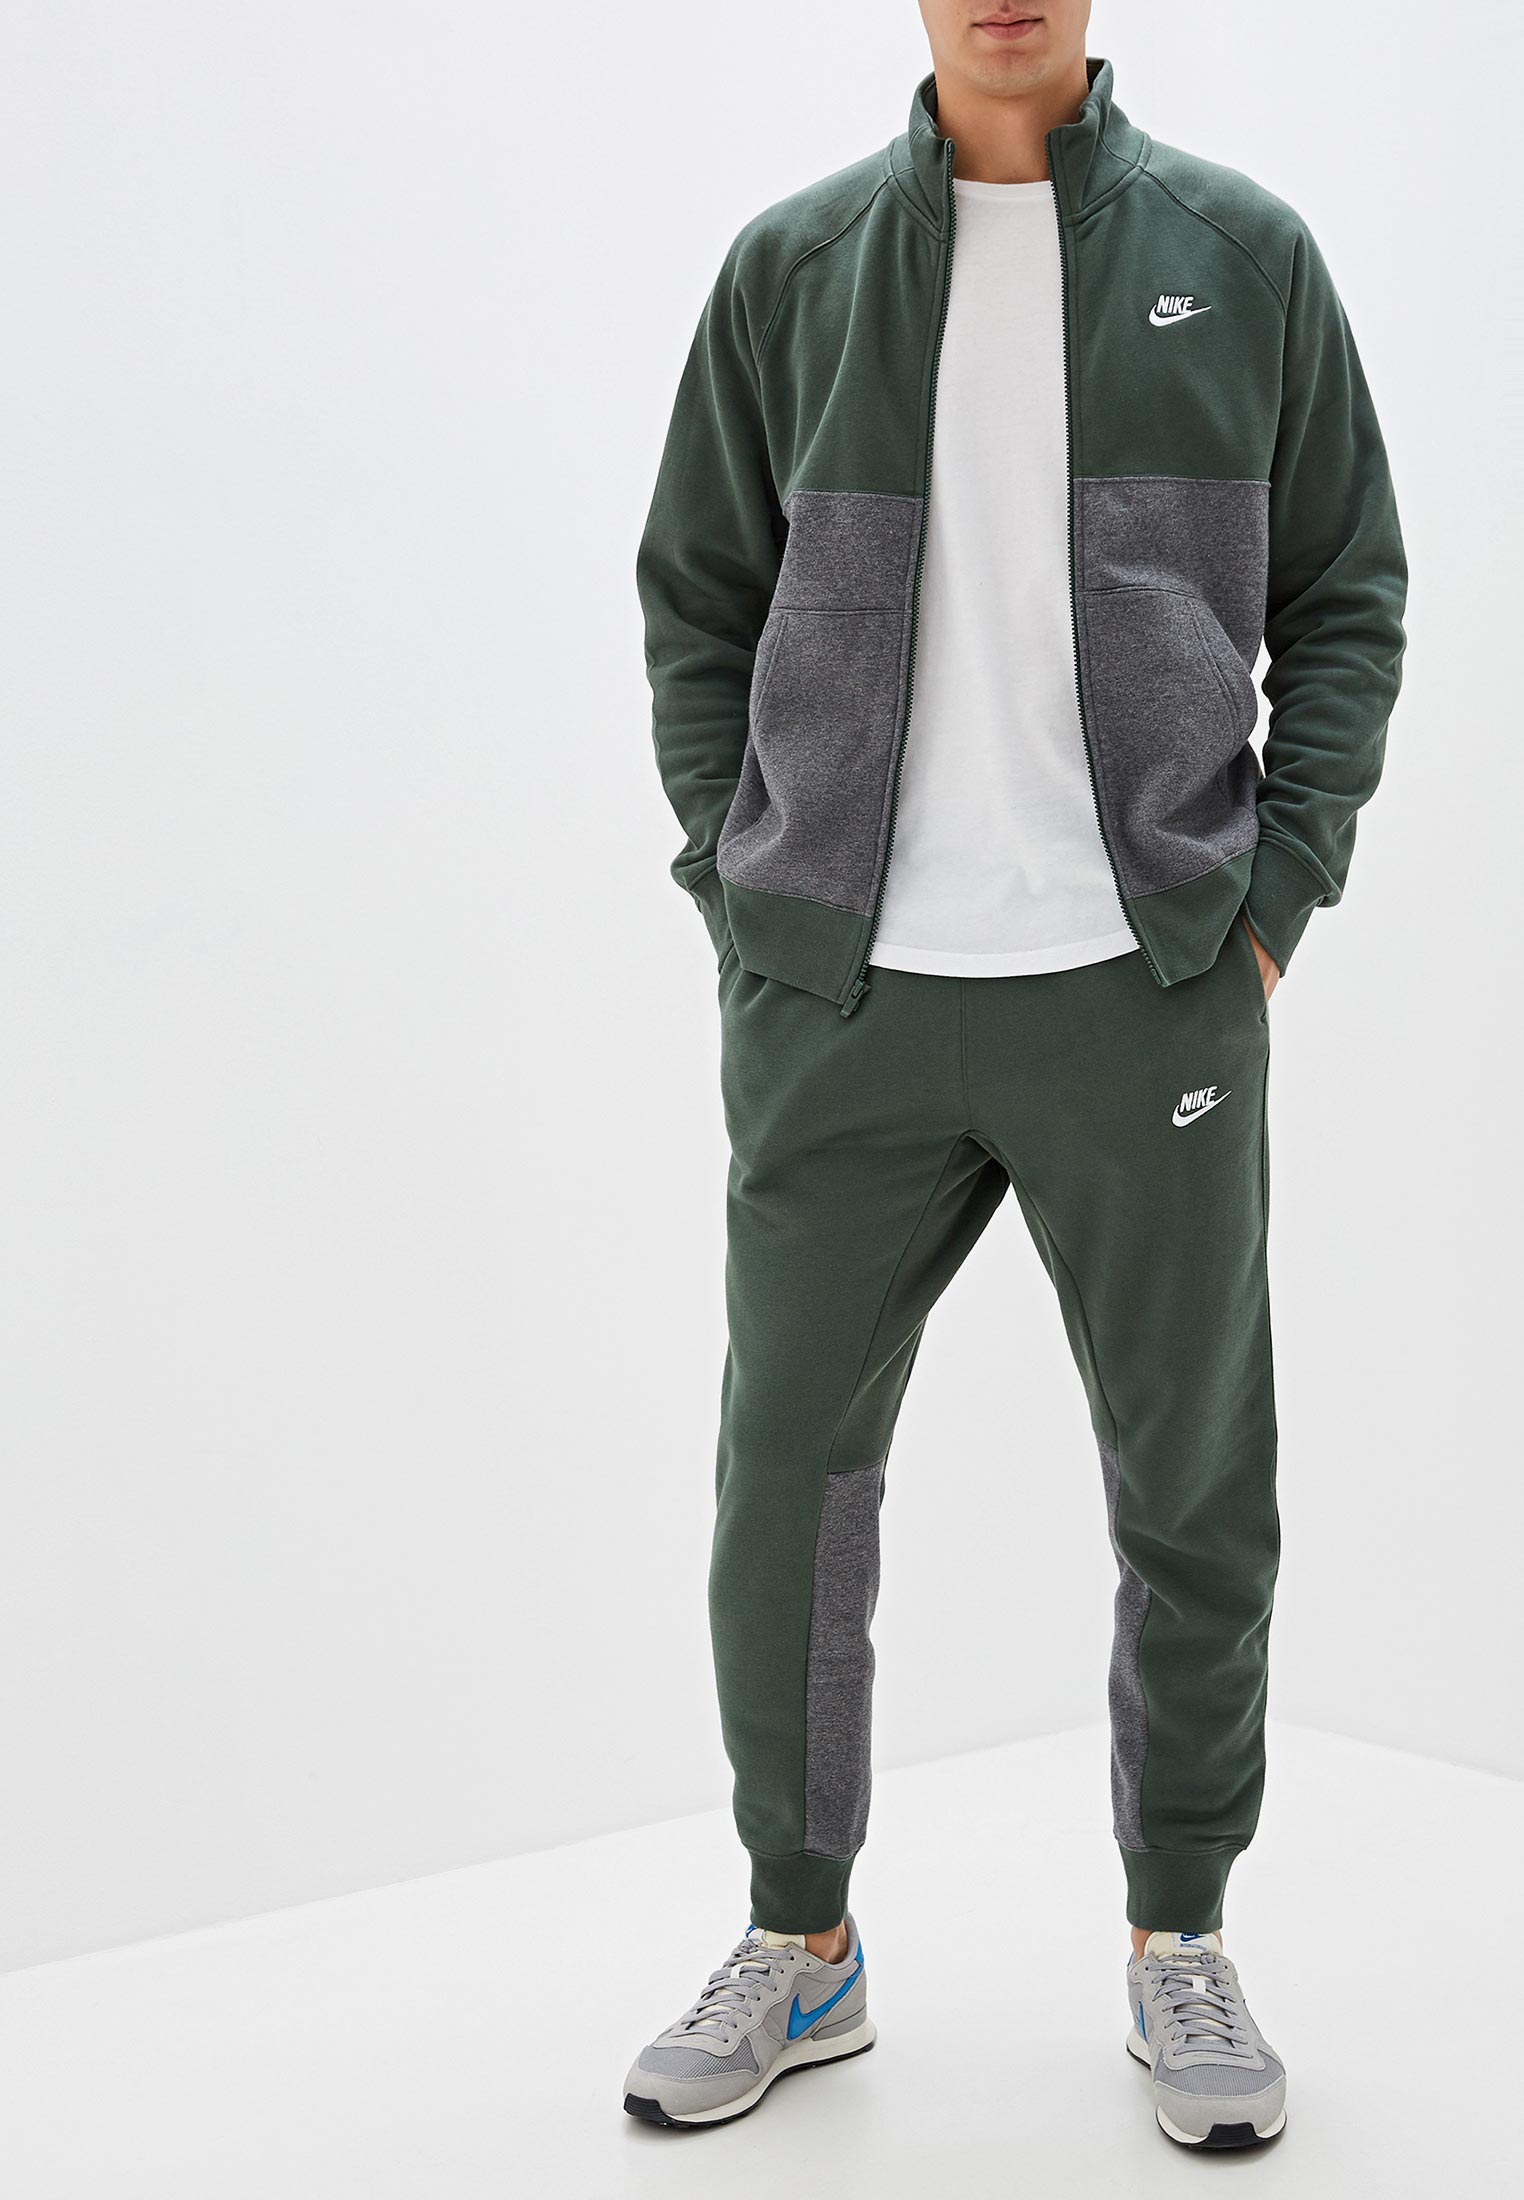 Костюм спортивный Nike Sportswear Mens Fleece Tracksuit цвет зеленый Ni464emfnfh4 — купить в